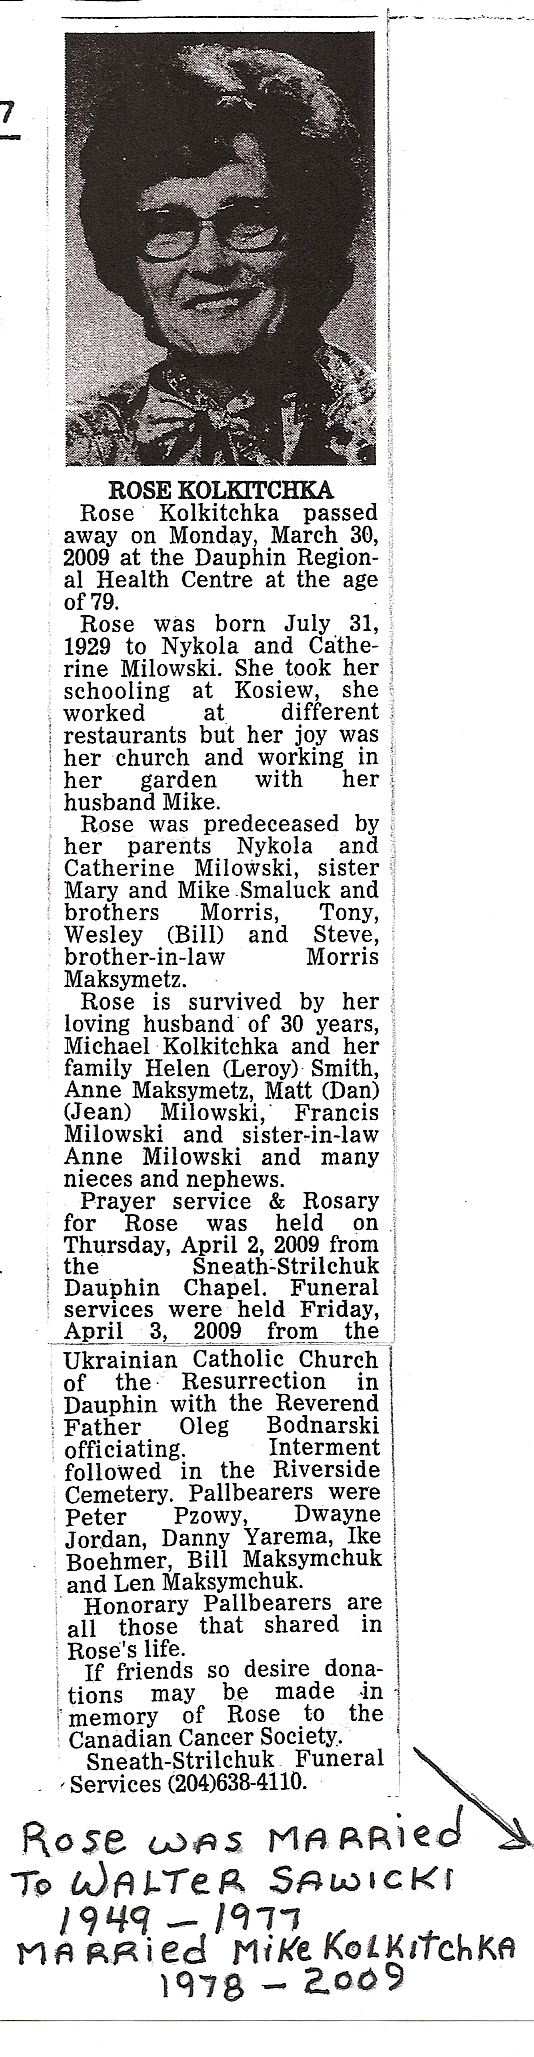 1-roses obituary